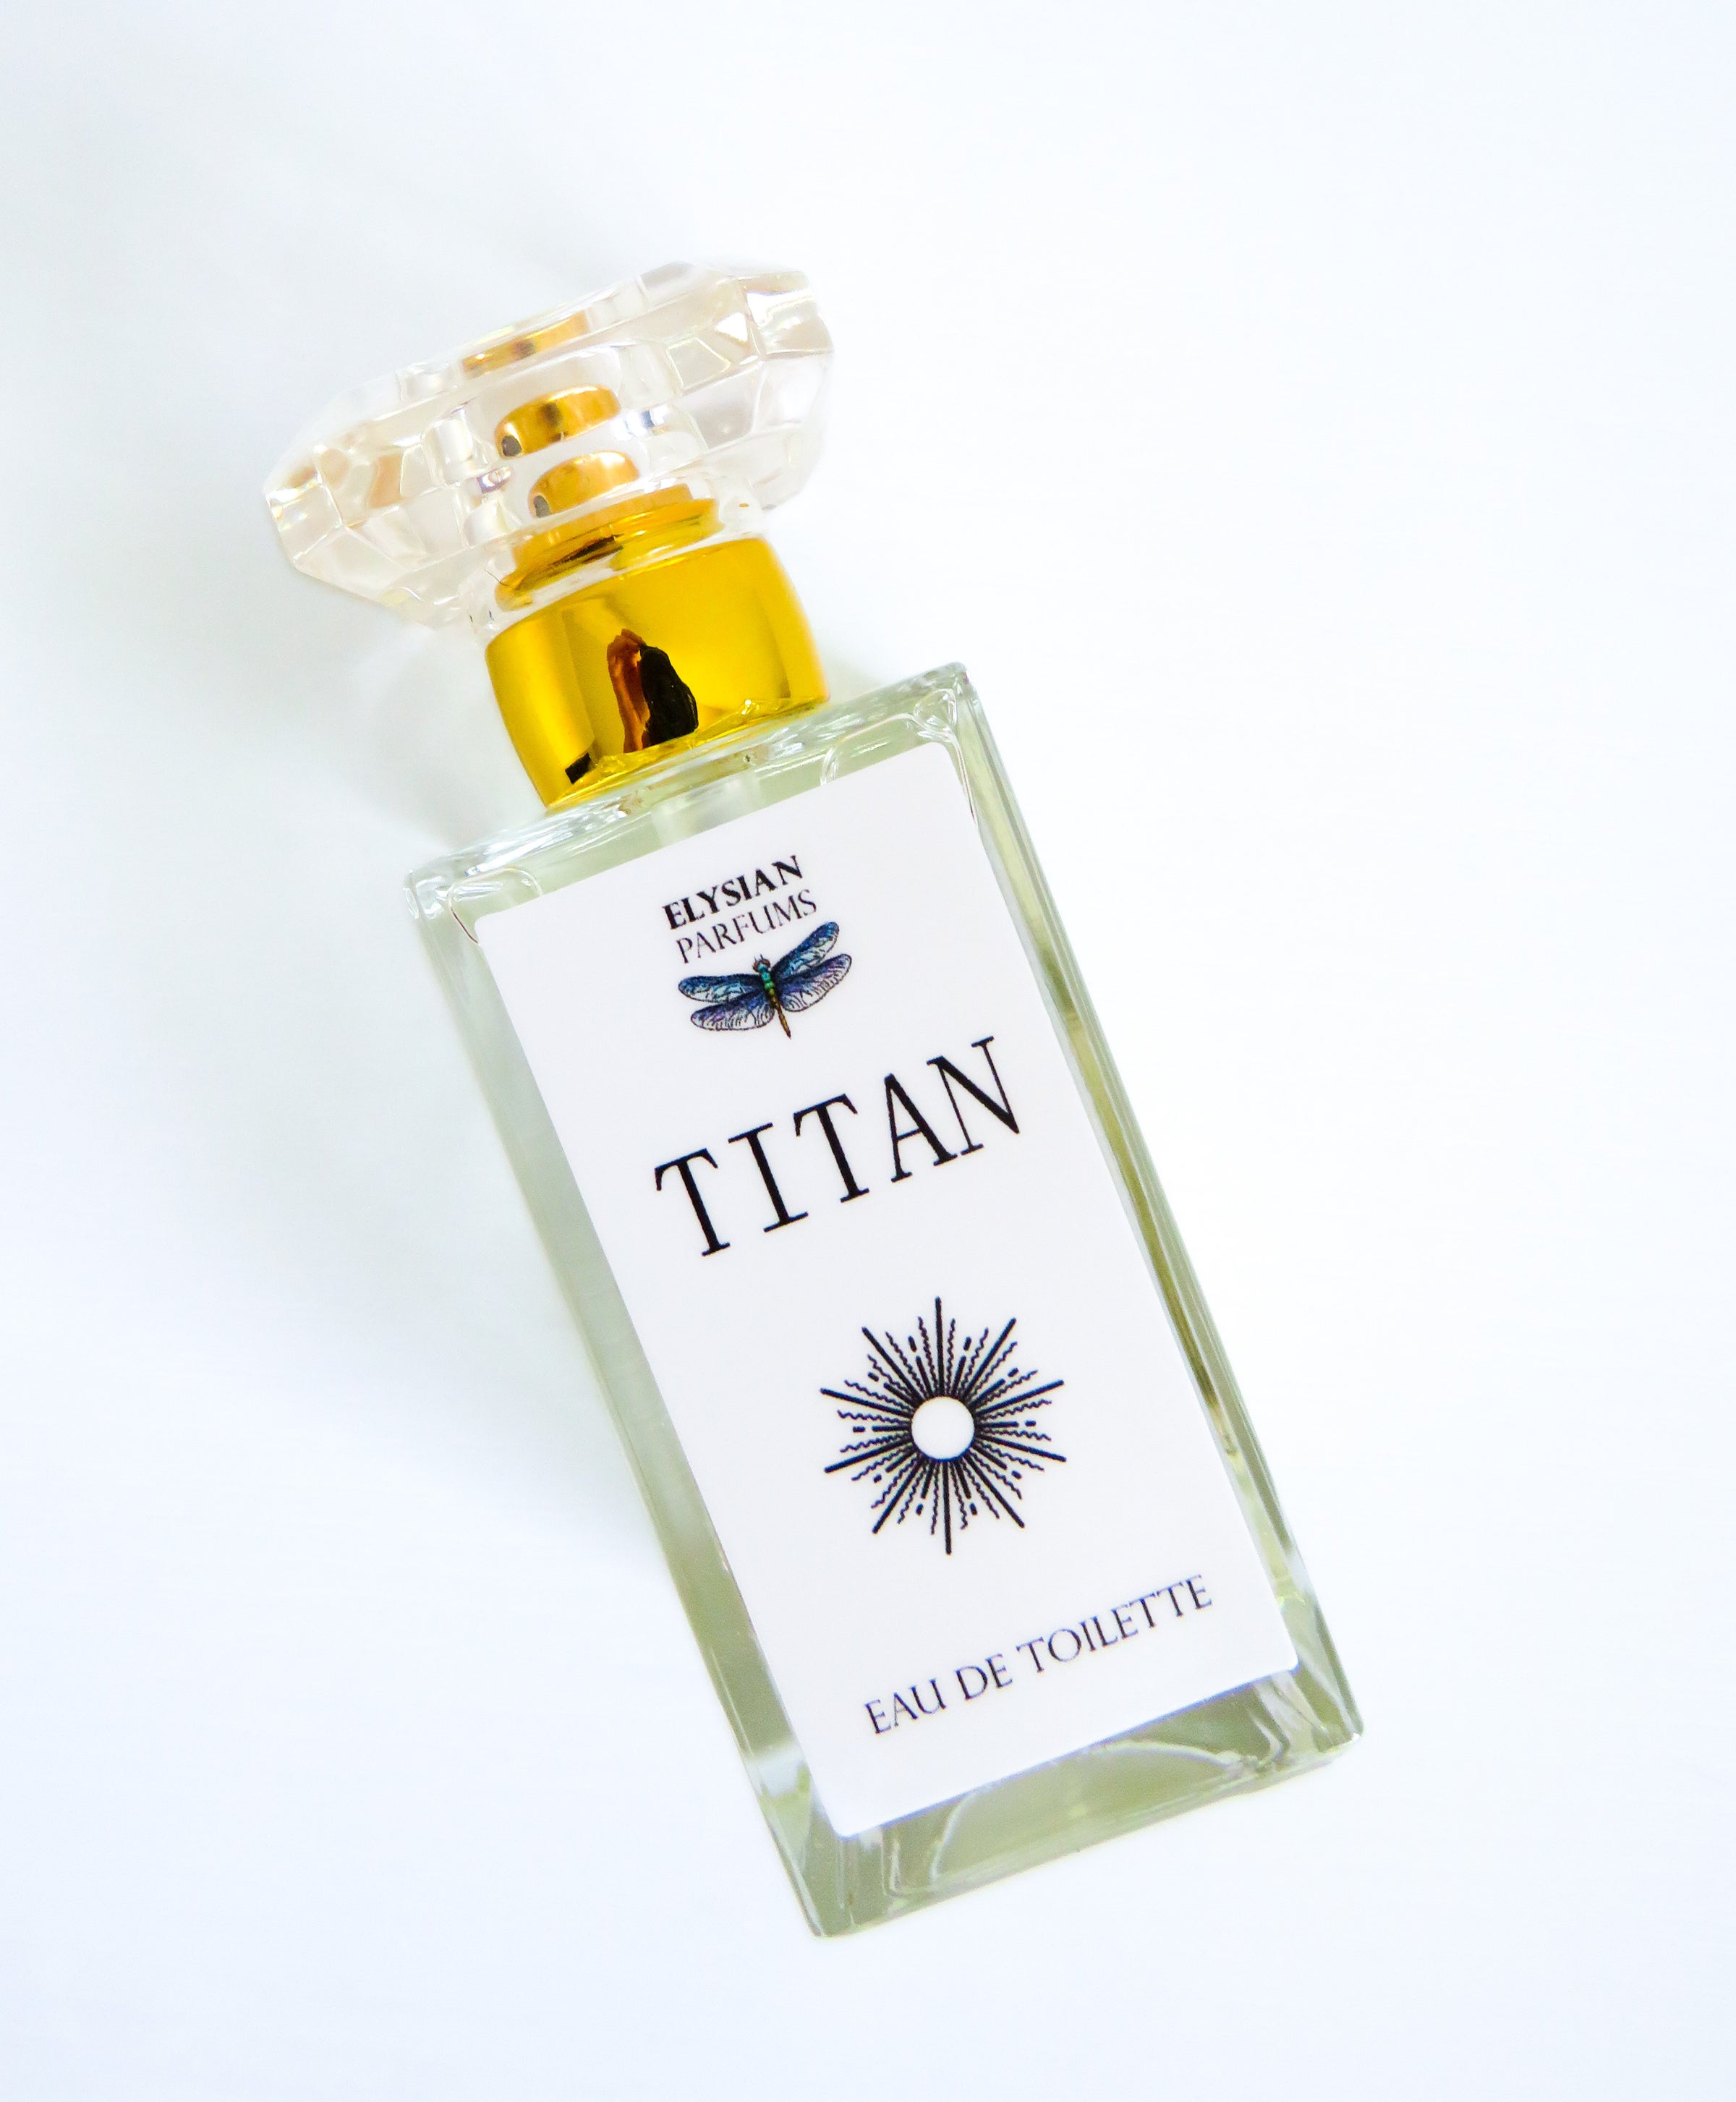 Elysian Lyra Parfum | Elysian Soap Shop